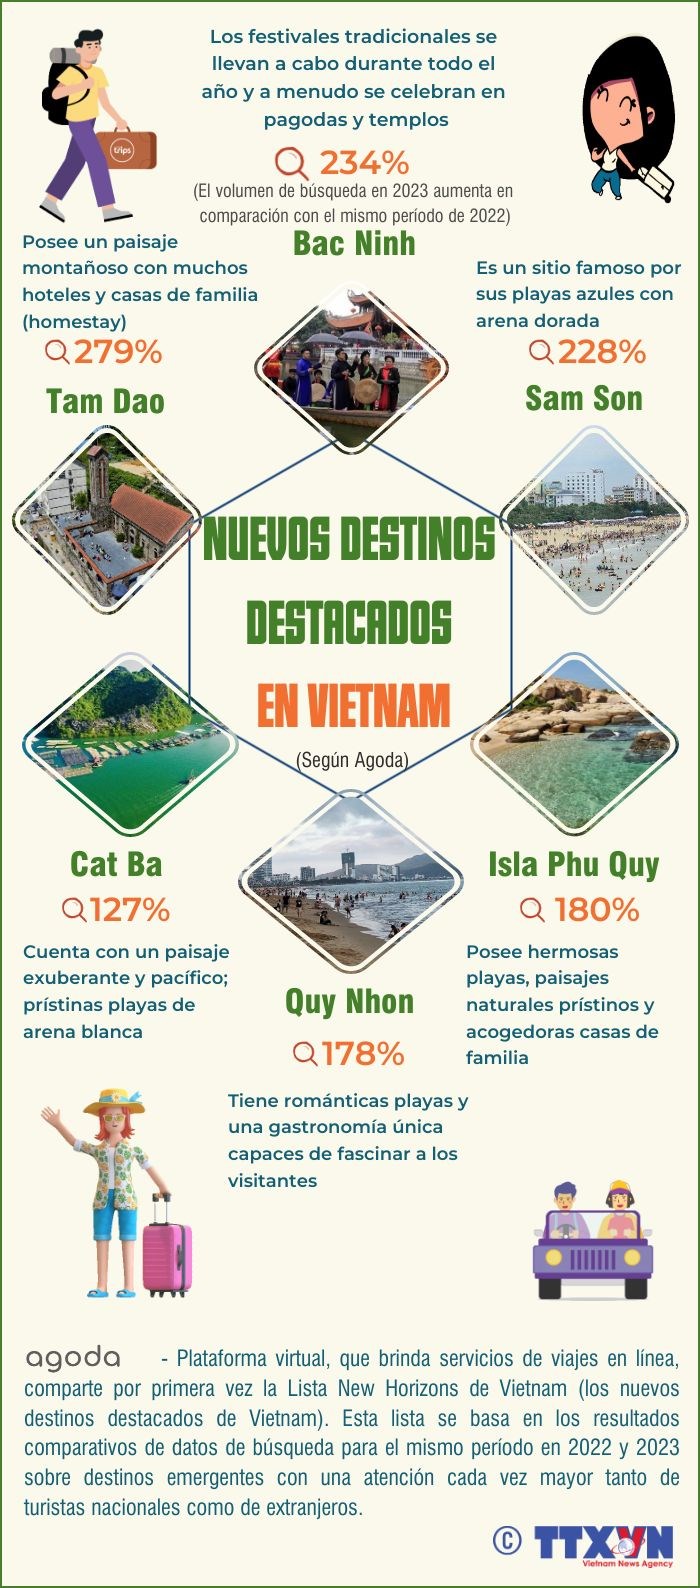 Los nuevos destinos turisticos destacados de Vietnam hinh anh 1